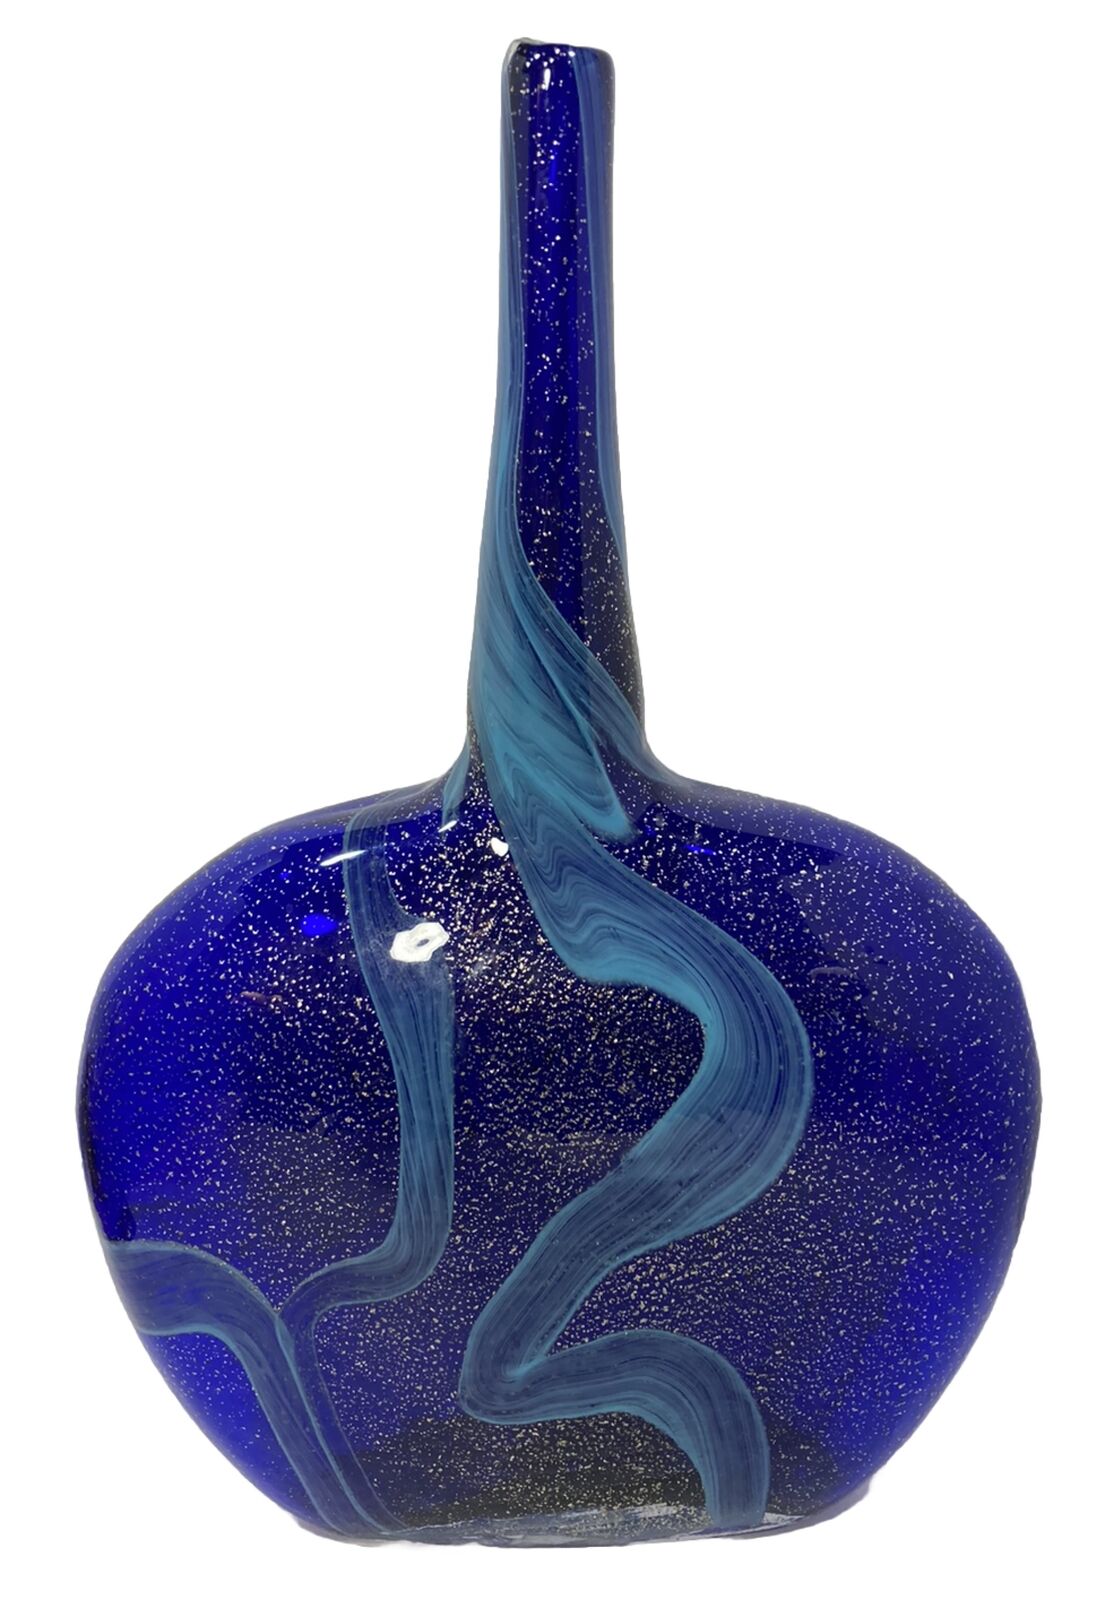 IMAX Home Large 15.75x10” Bottle Vase-Hand Blown-Cobalt Blue Swirl-Gold Flecks